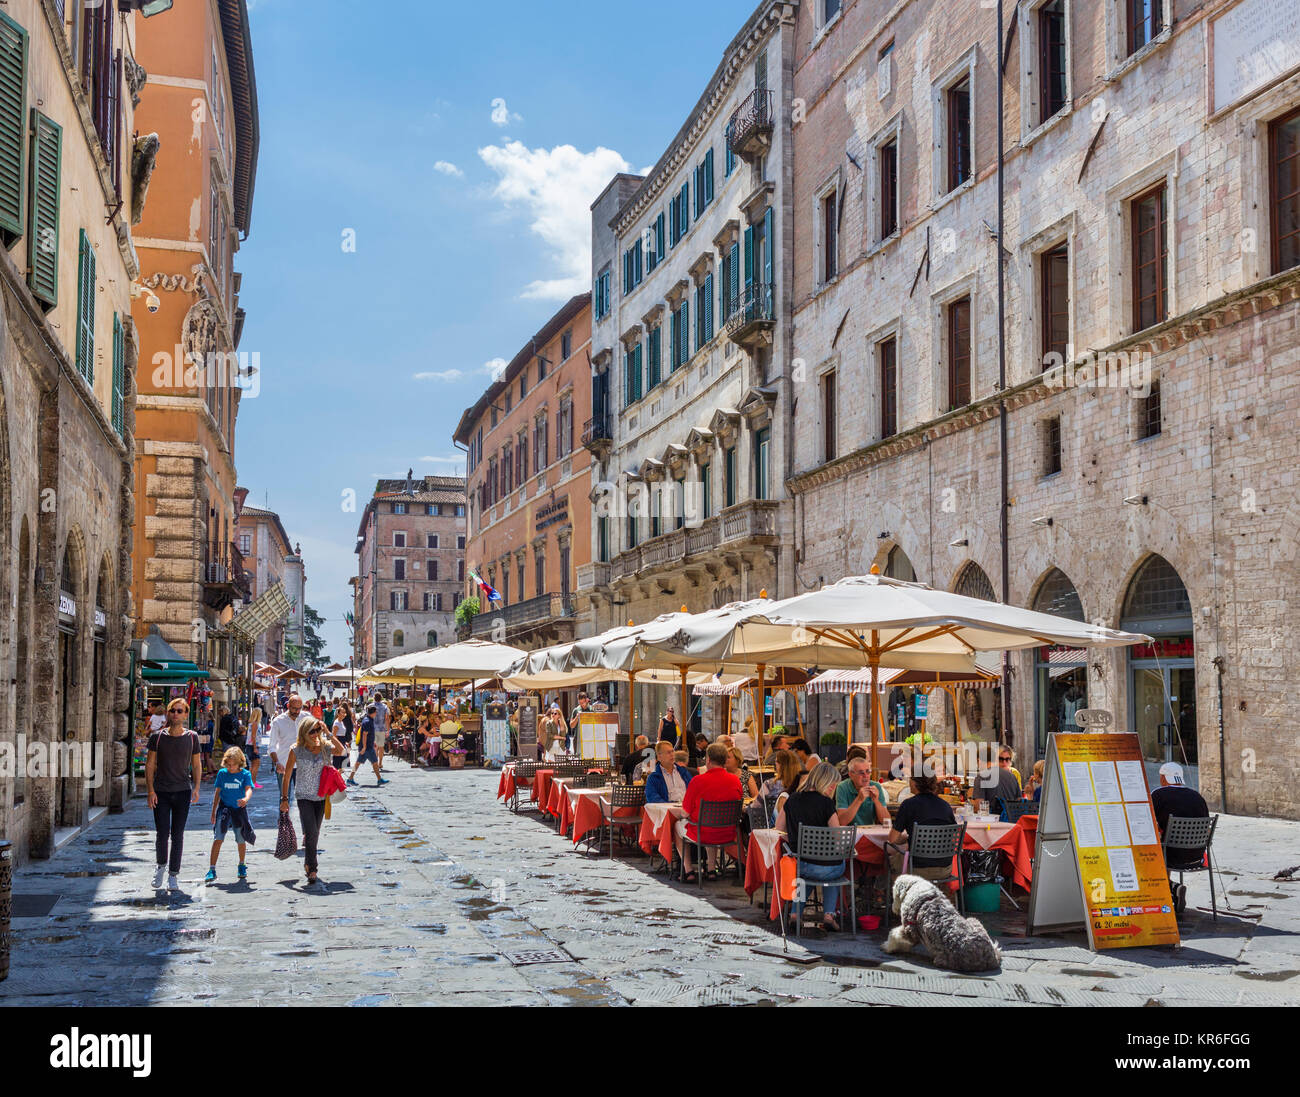 Des terrasses de cafés et restaurants sur le Corso Pietro Vannucci dans le vieux centre ville, Pérouse, Ombrie, Italie Banque D'Images